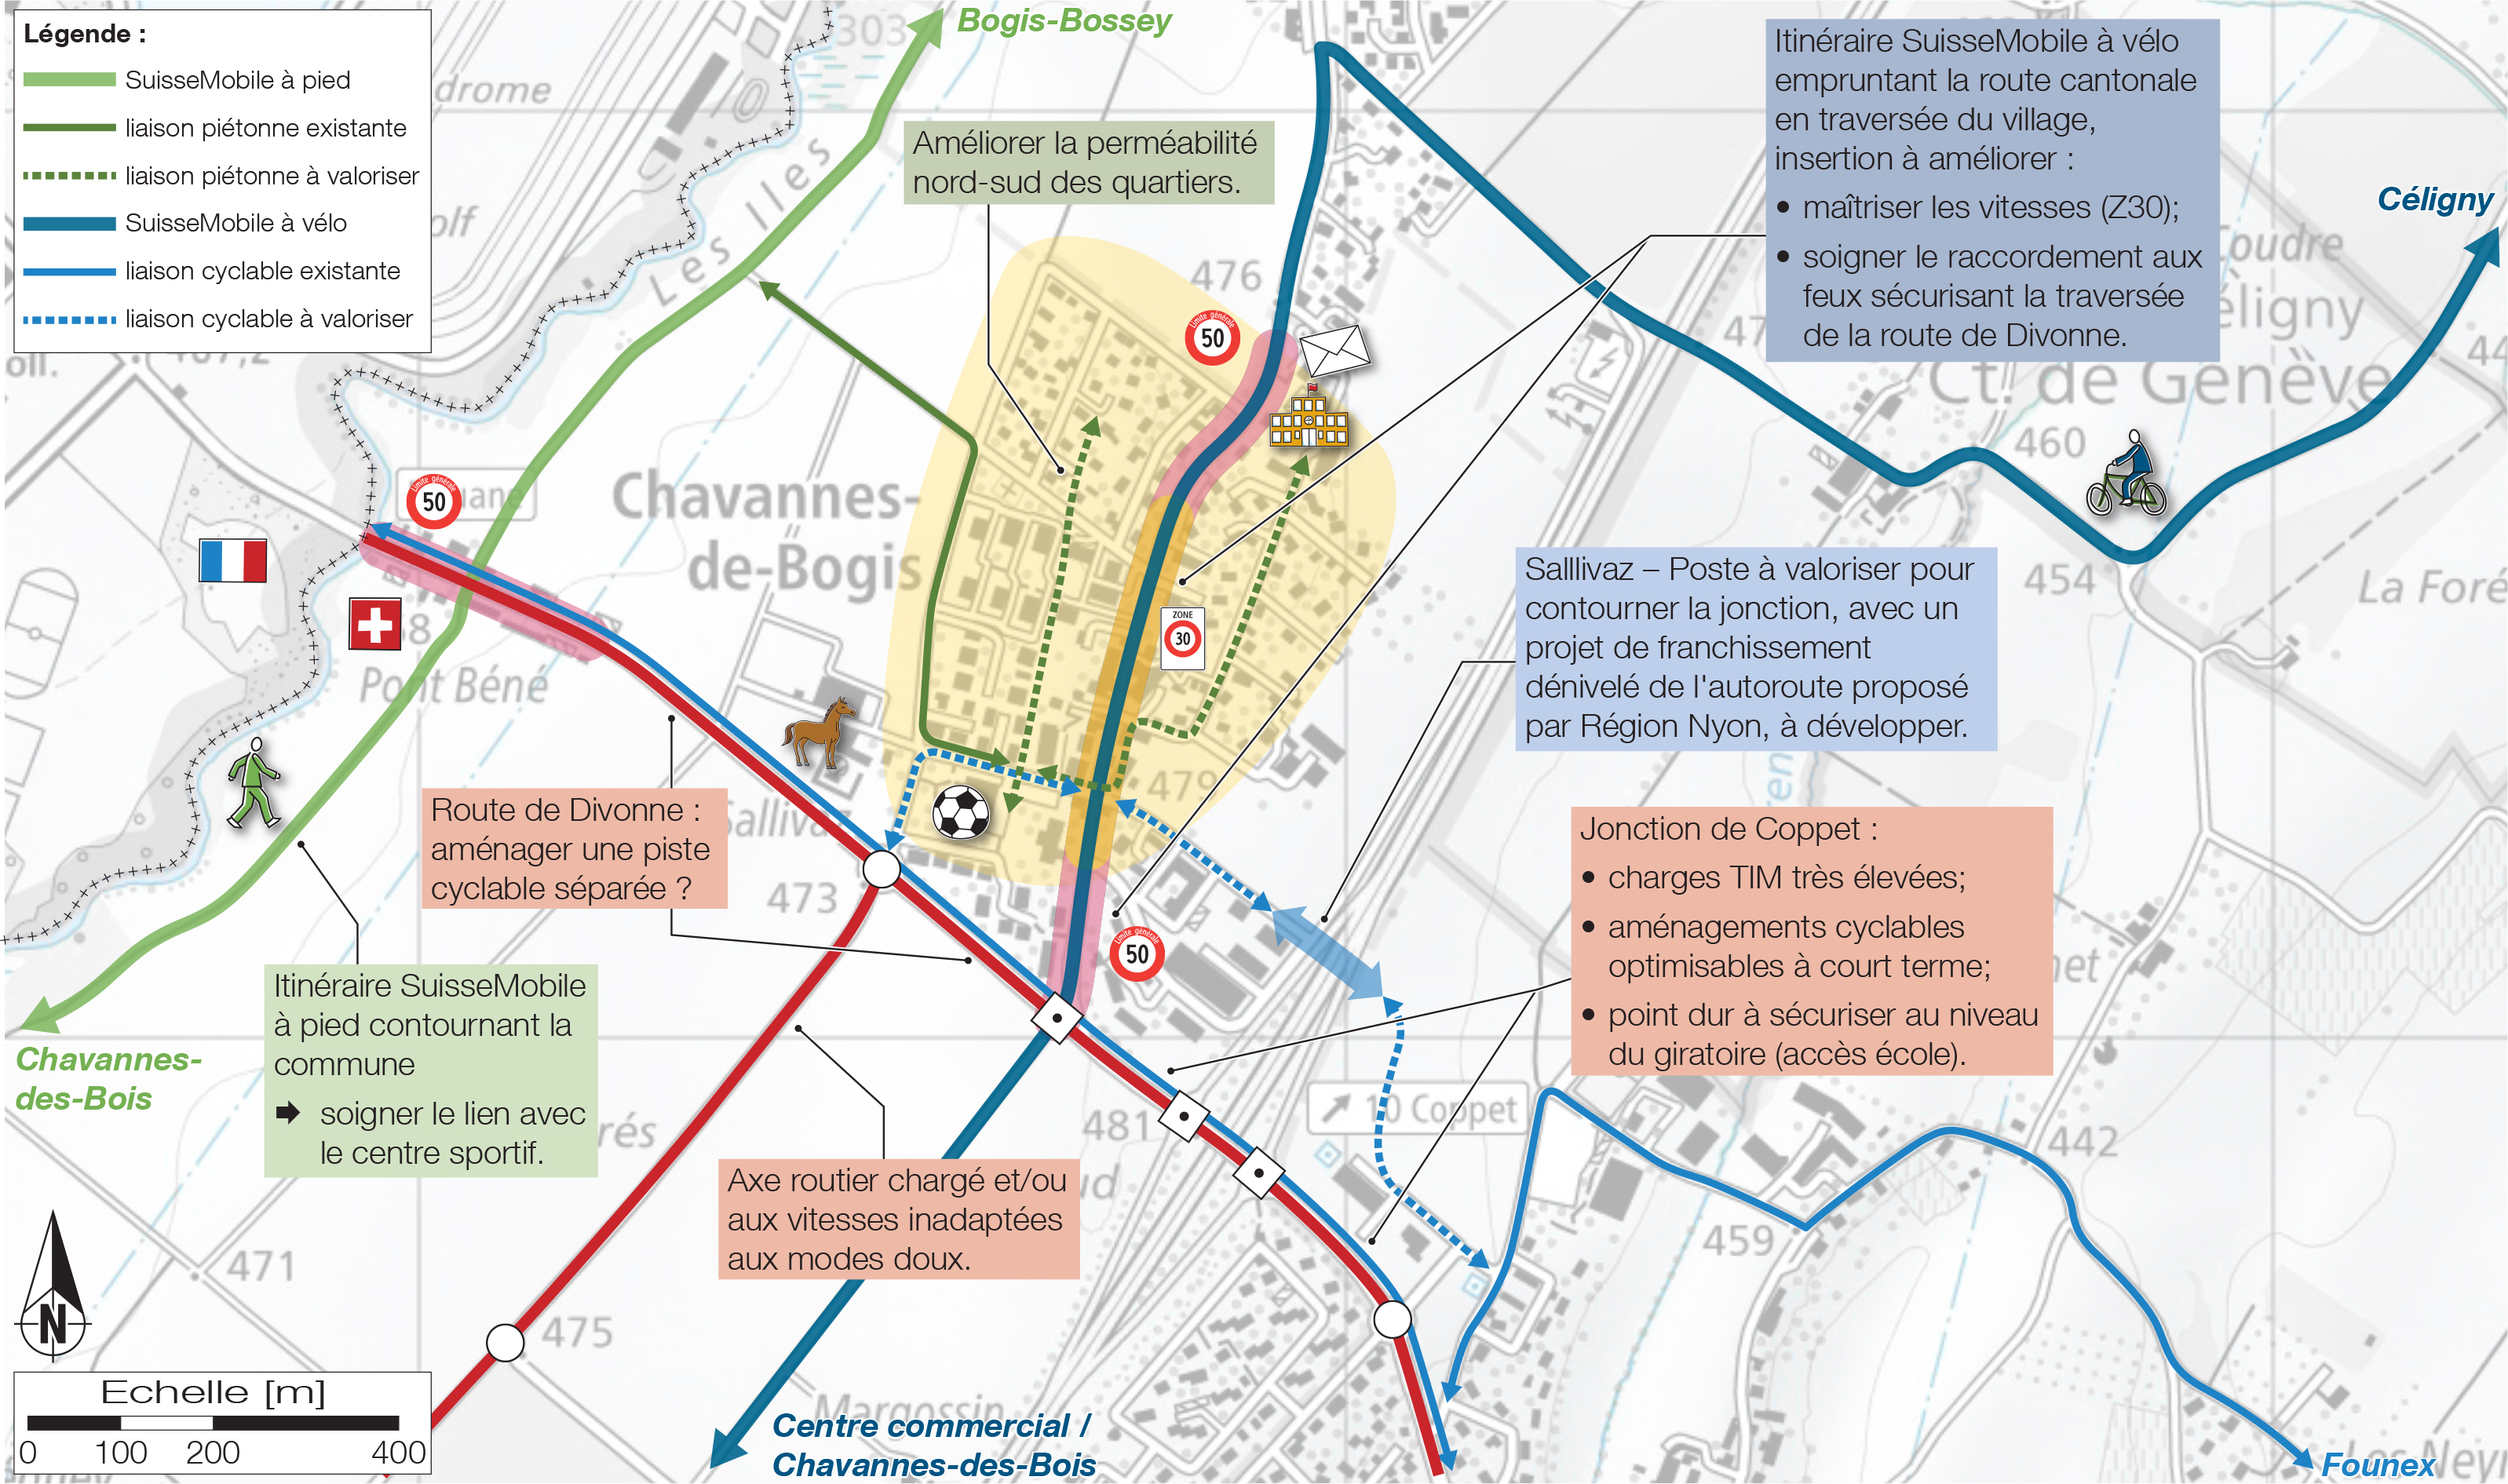 Chavannes-de-Bogis - Etude de mobilité communale